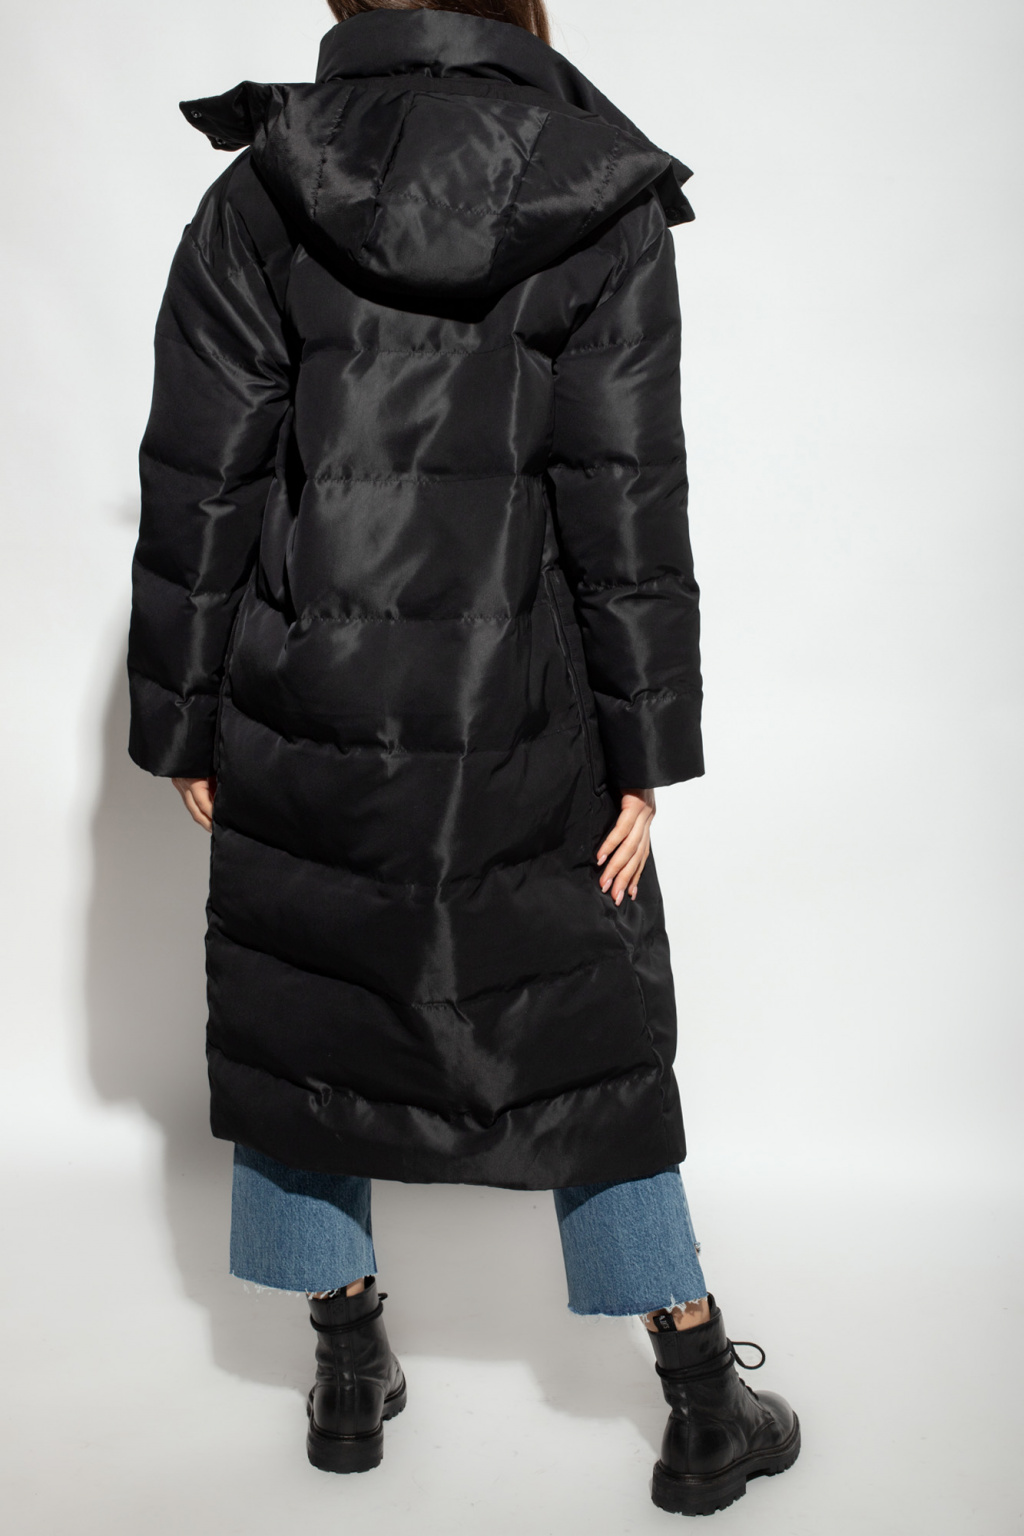 Allana' coat AllSaints - IetpShops Japan